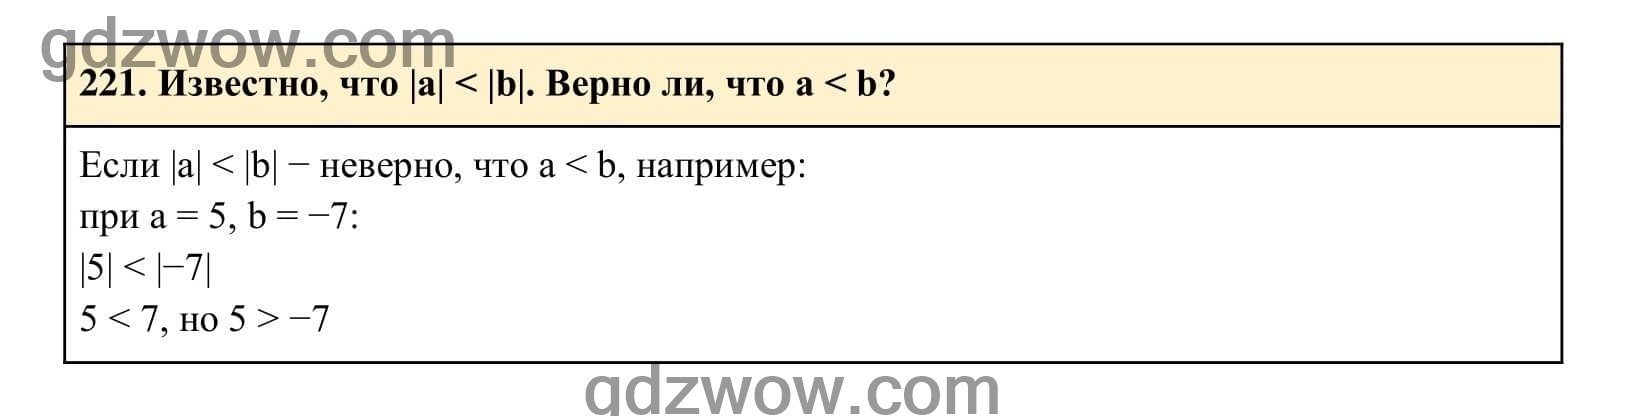 Упражнение 221 - ГДЗ по Алгебре 7 класс Учебник Макарычев (решебник) - GDZwow